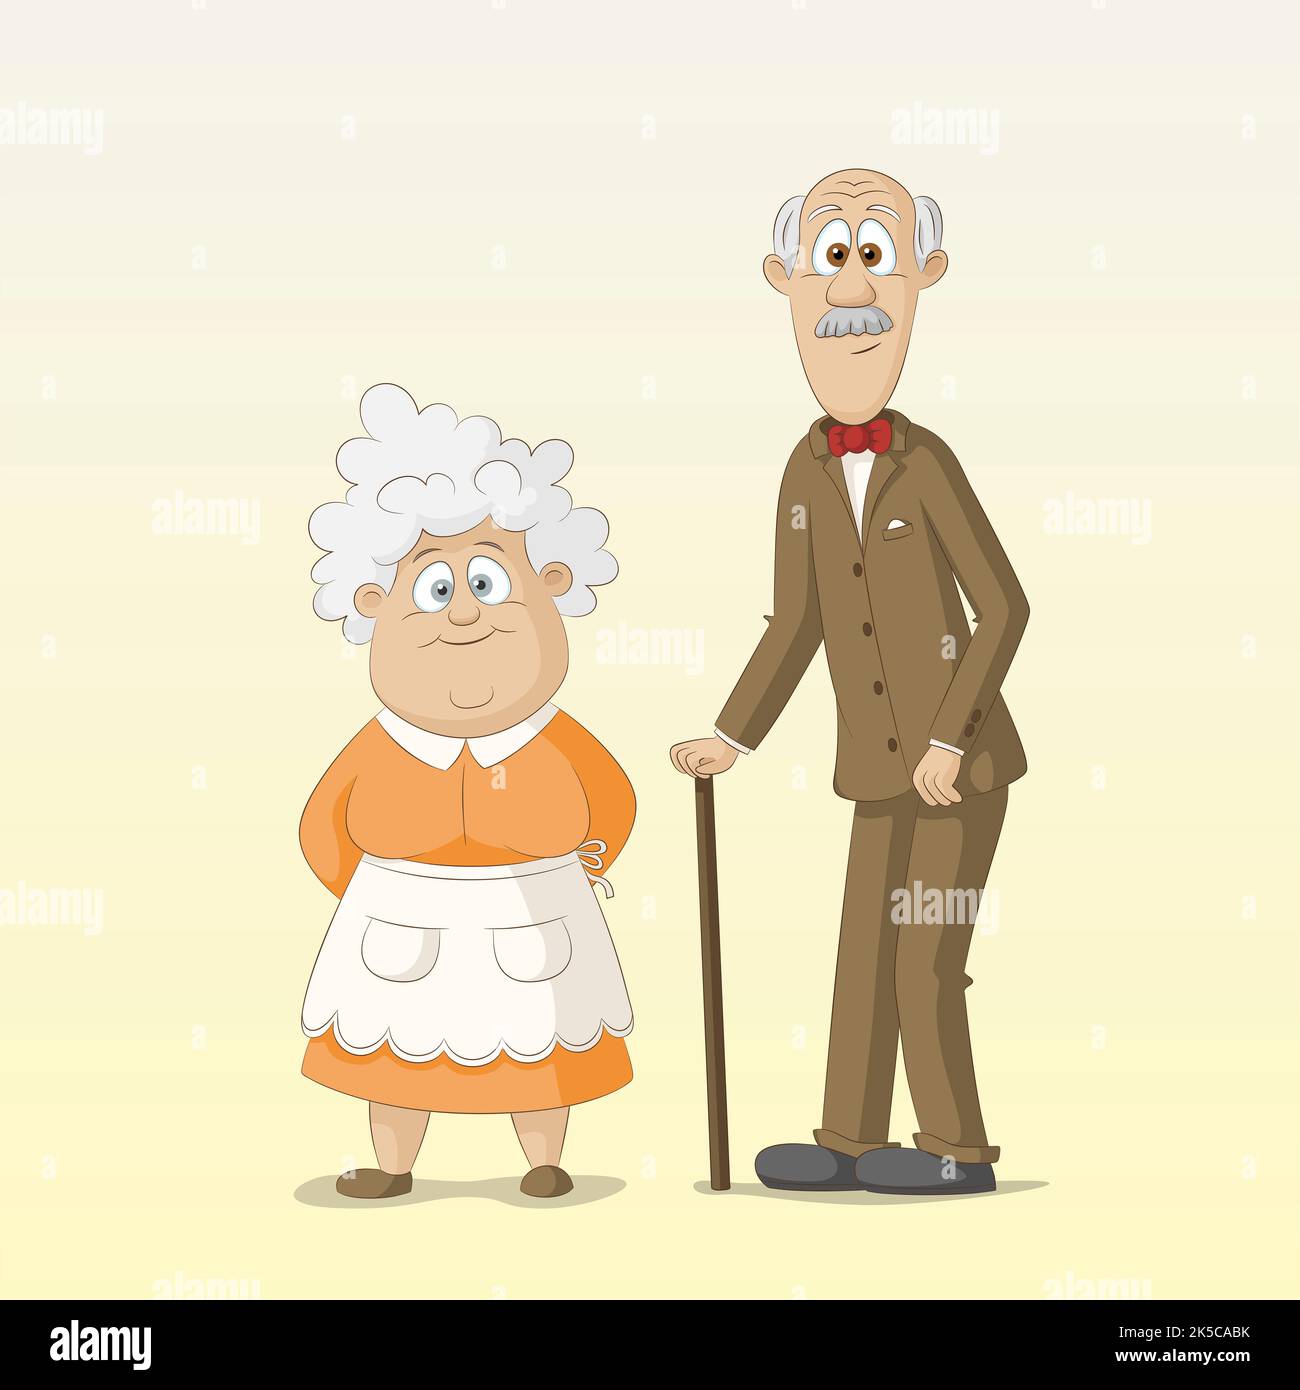 Cute grandparents, grandma and grandpa, illustration Stock Photo